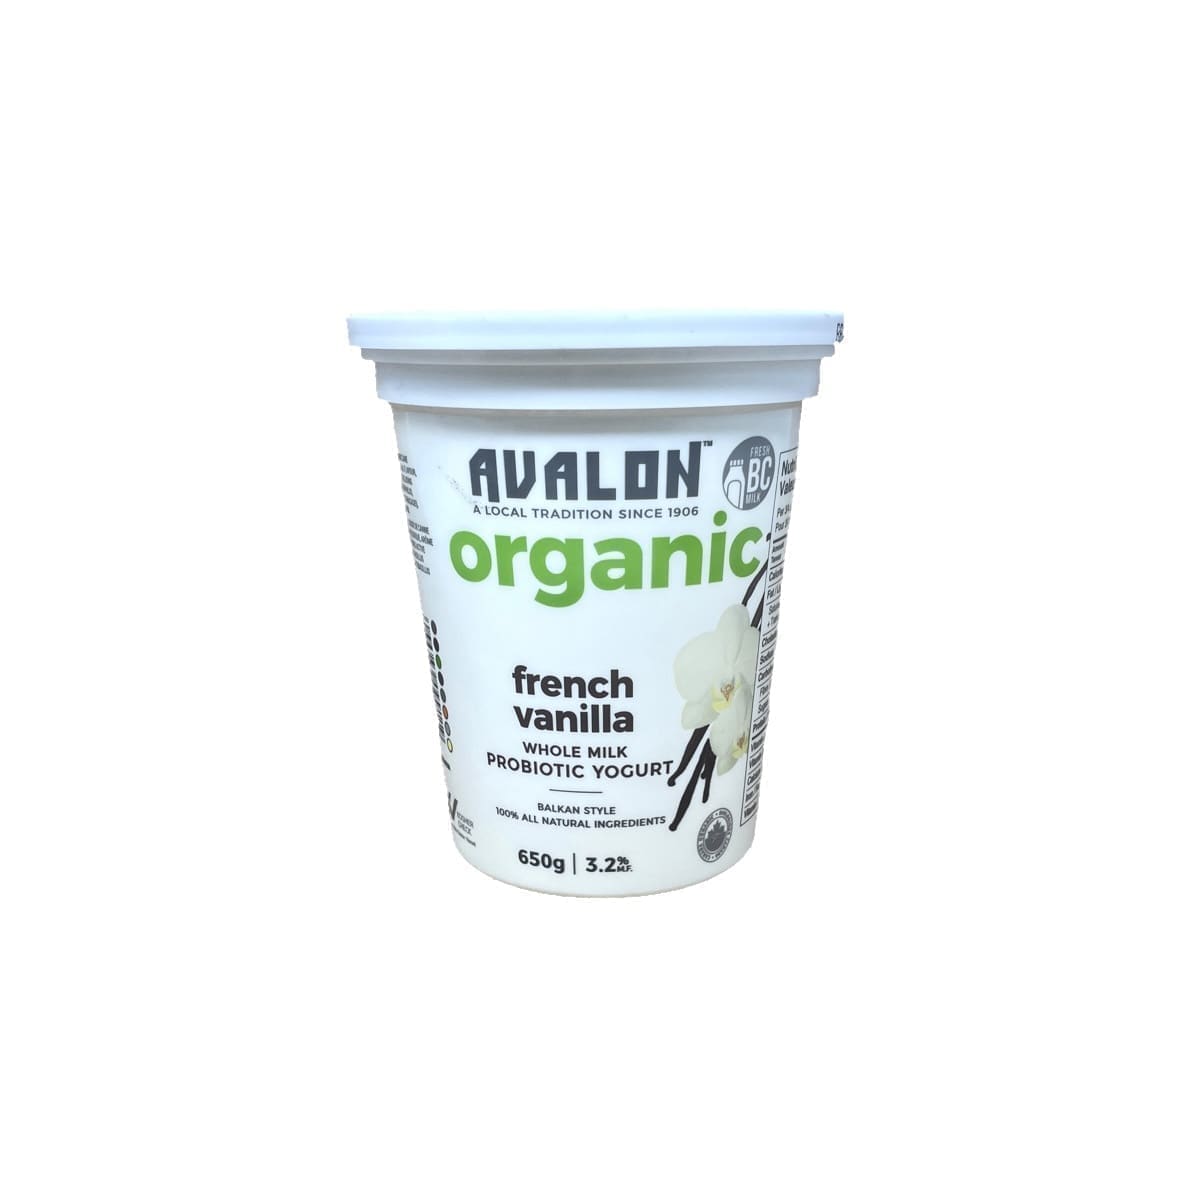 Avalon Organic Probiotic Yogurt French Vanilla (650g)